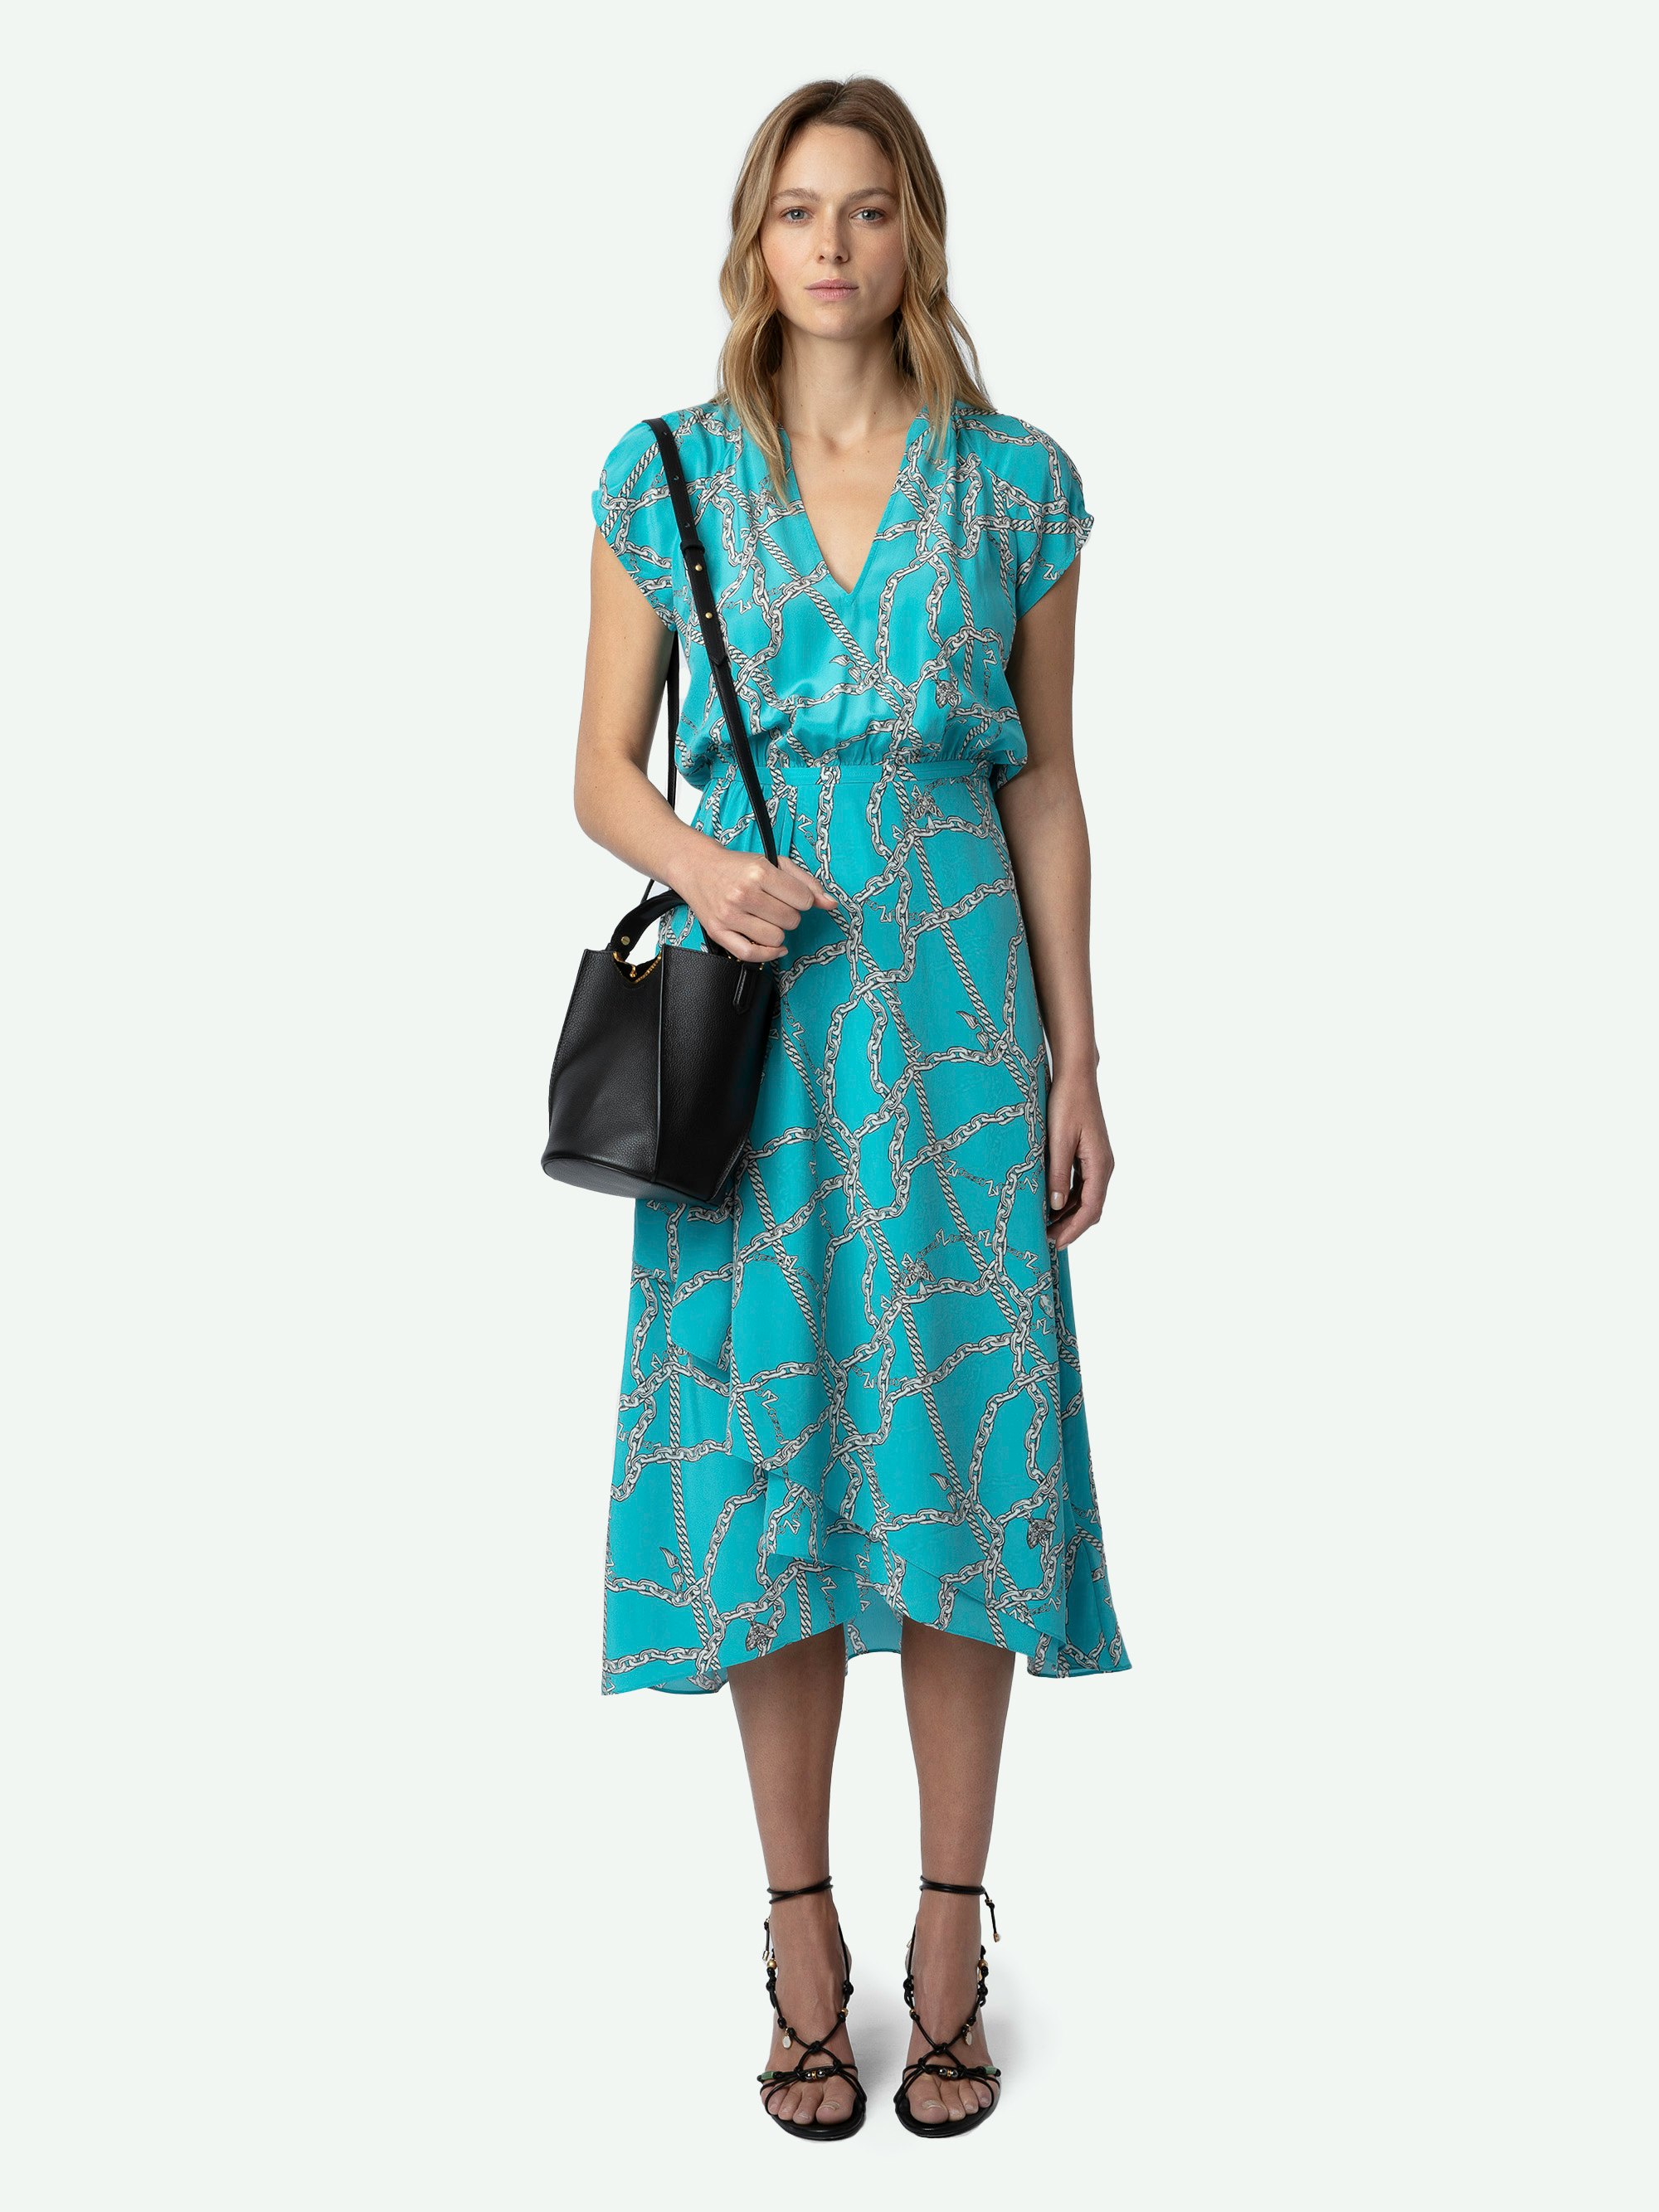 Kleid Randall Seide - Halblanges, blaues Seidenkleid mit ZV-Kettenprint, kurzen Raglanärmeln und Rockteil mit asymmetrischem gerüschtem Schoß.